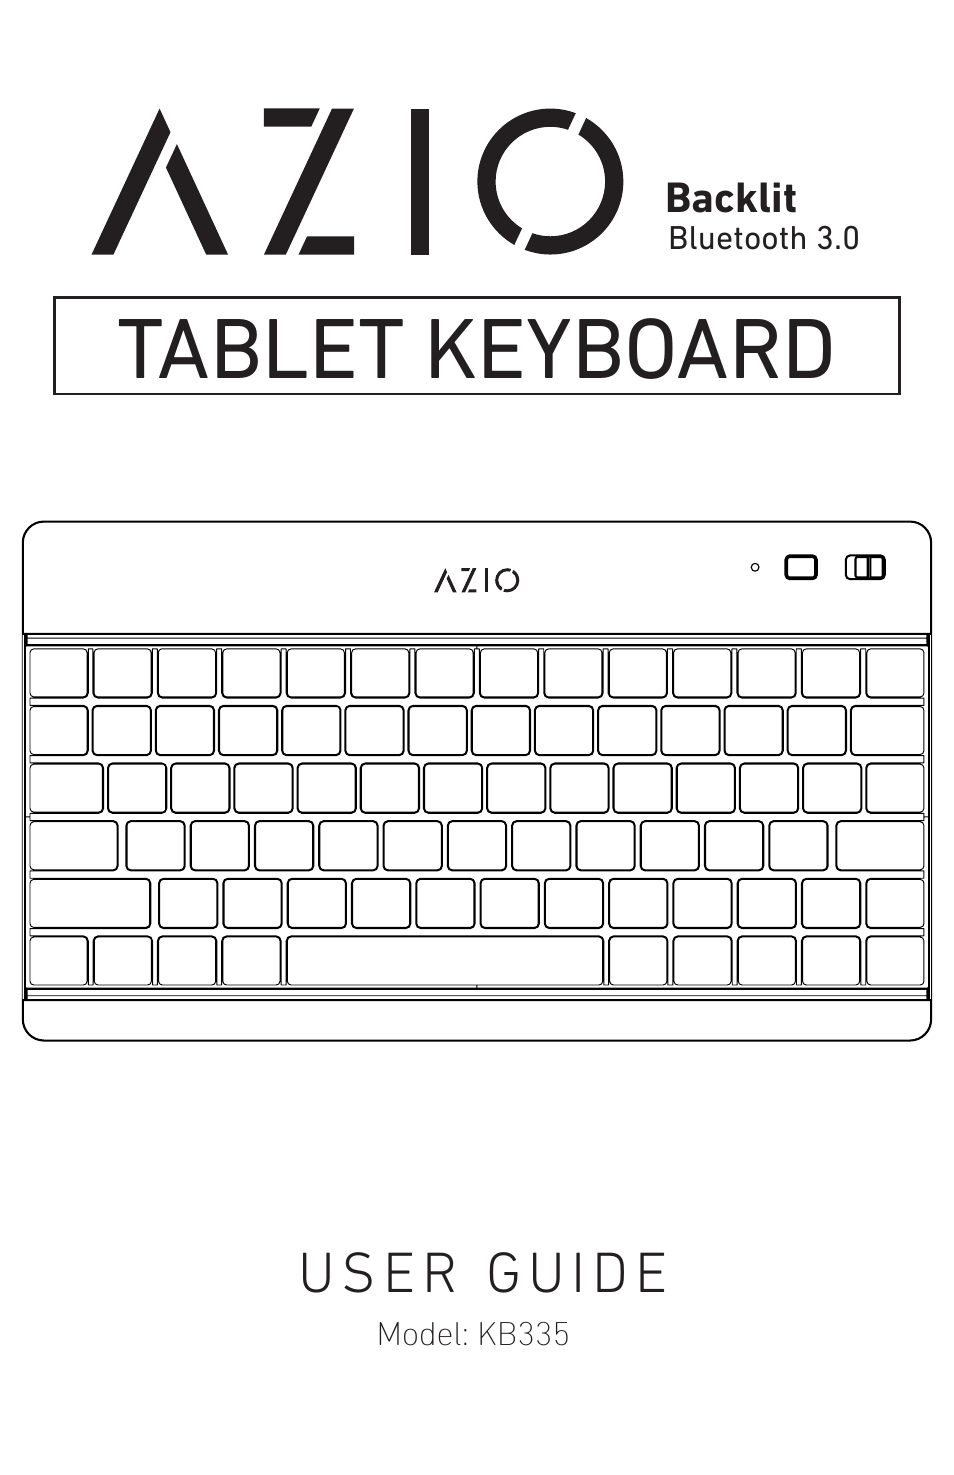 Backlit Bluetooth Tablet Keyboard (KB335)